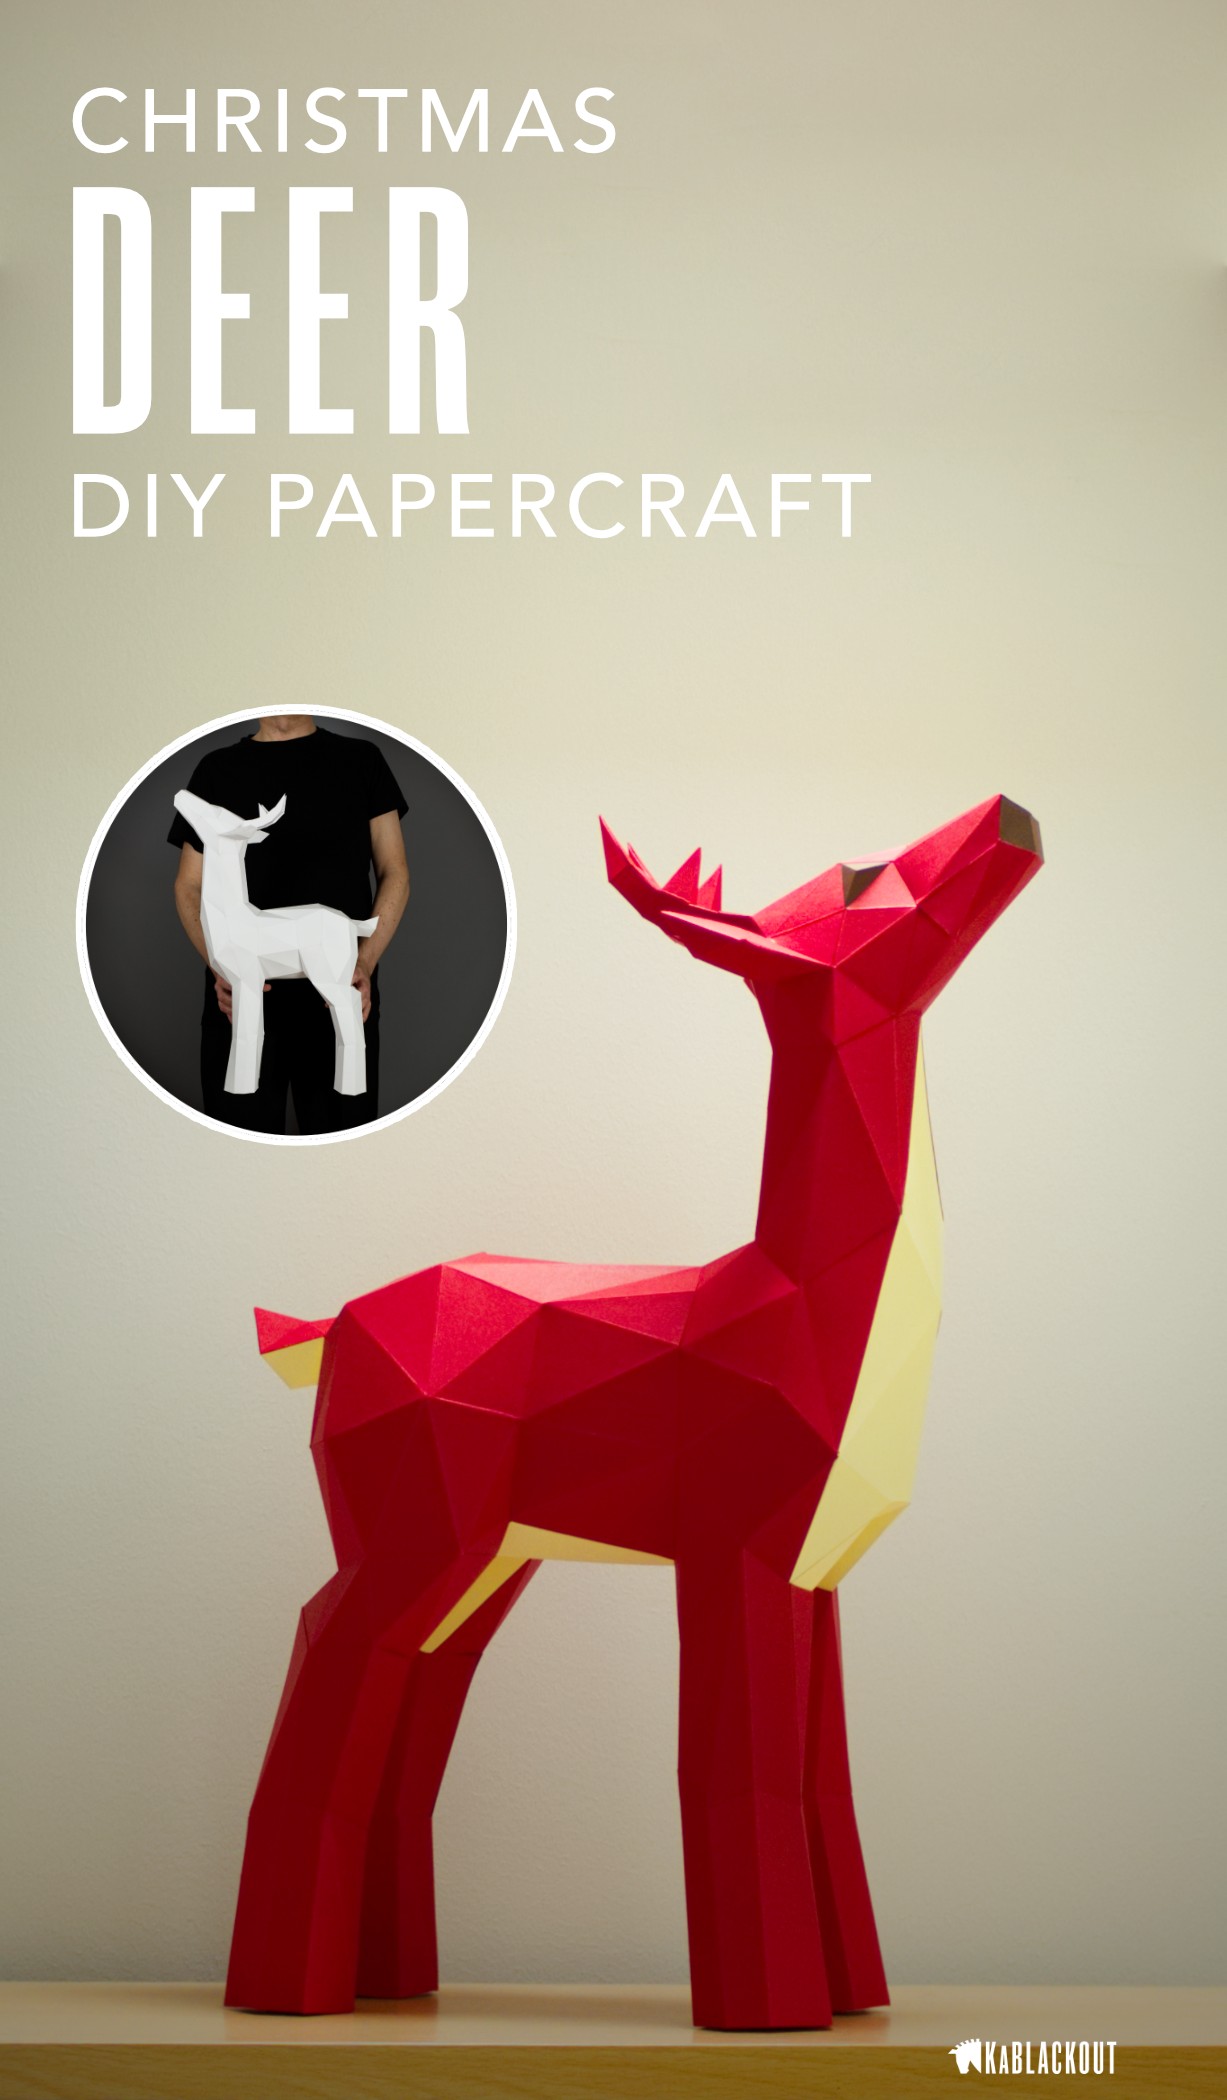 Papercraft Pattern Deer Papercraft Papercraft Deer Diy Deer Low Poly Deer Deer